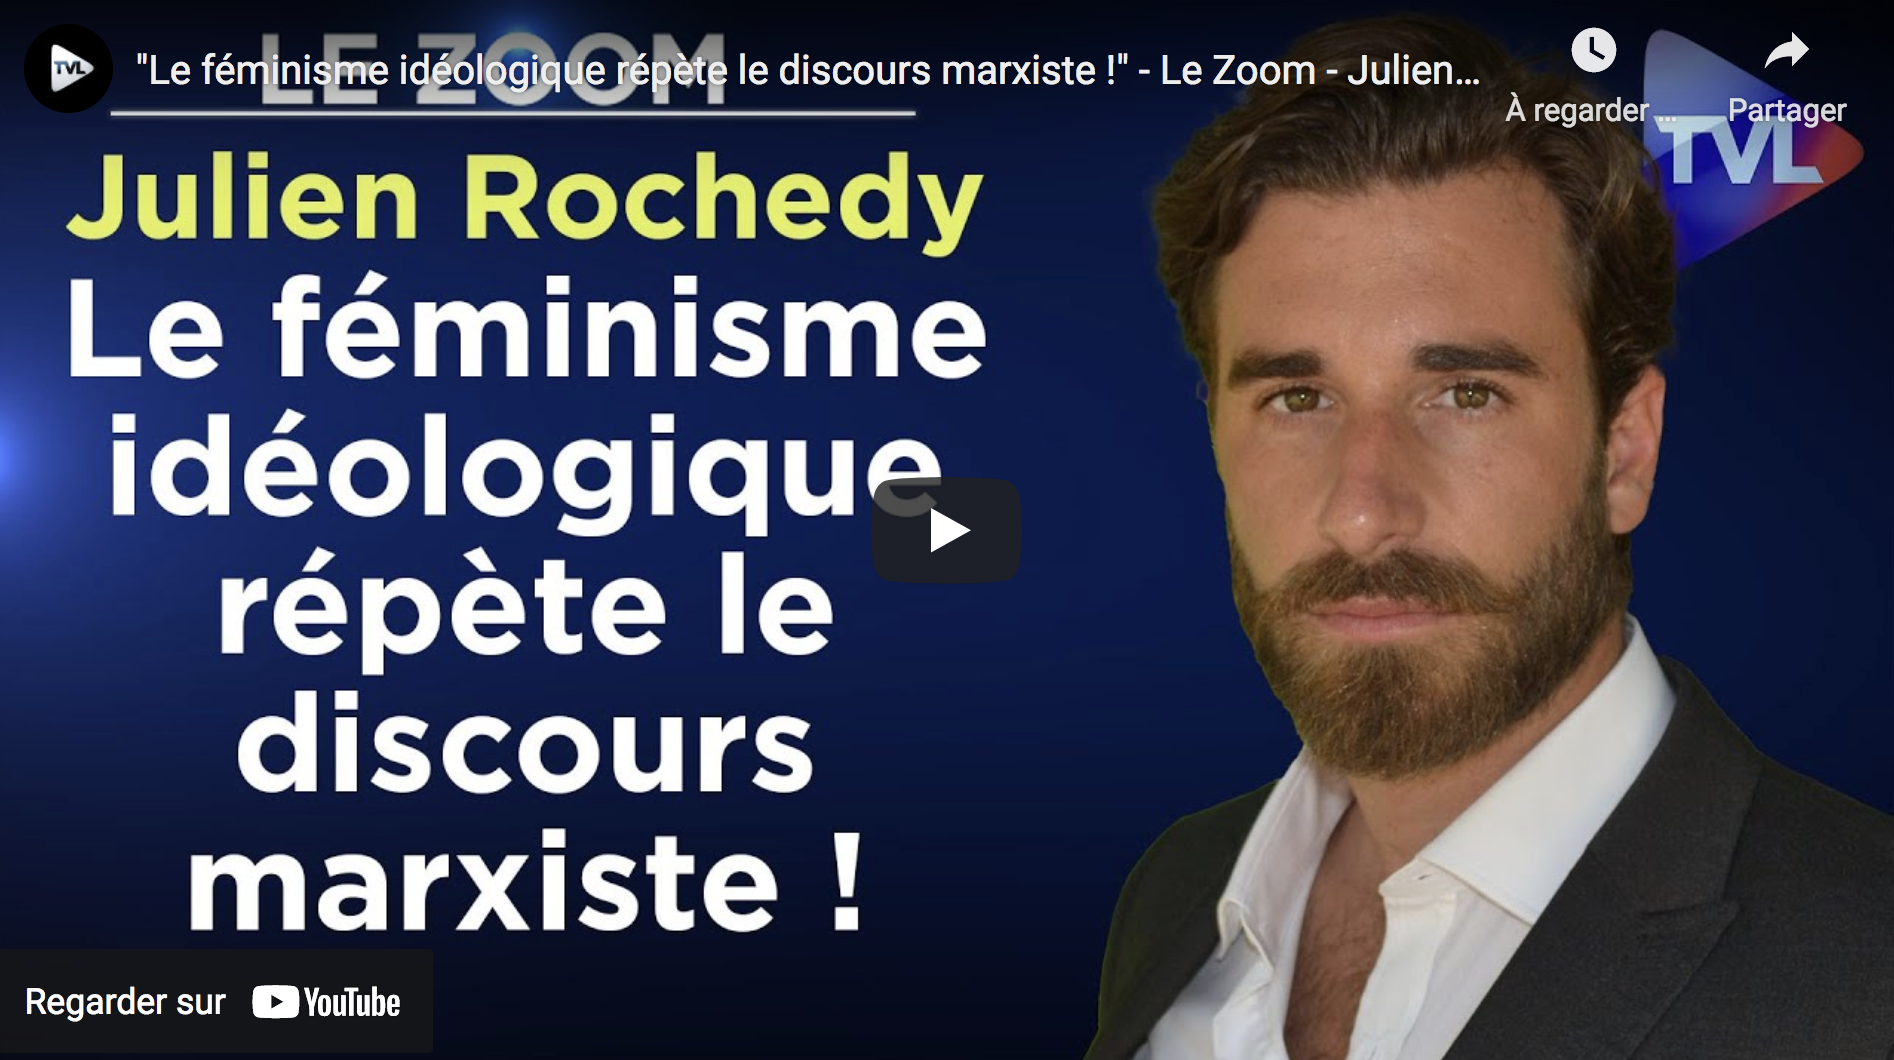 “Le féminisme idéologique répète le discours marxiste !” (Julien Rochedy)